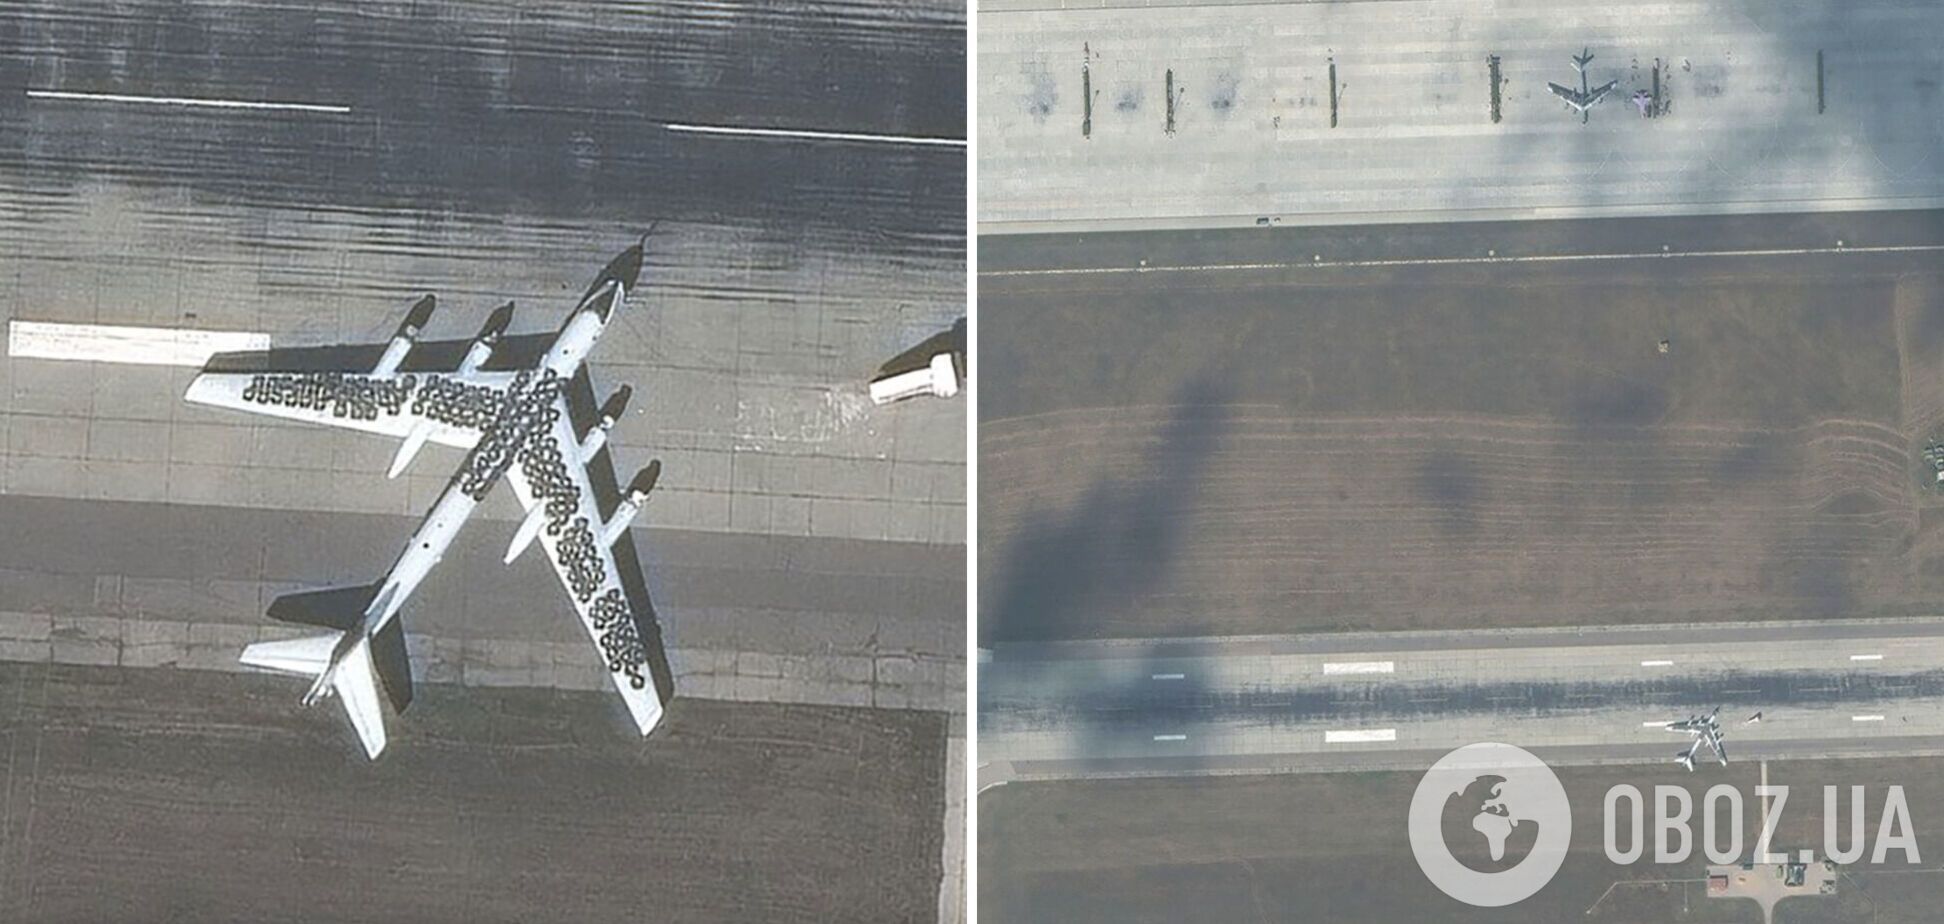 'Это выглядит глупо': западные эксперты прокомментировали 'маскировку' российских самолетов с помощью шин. Фото